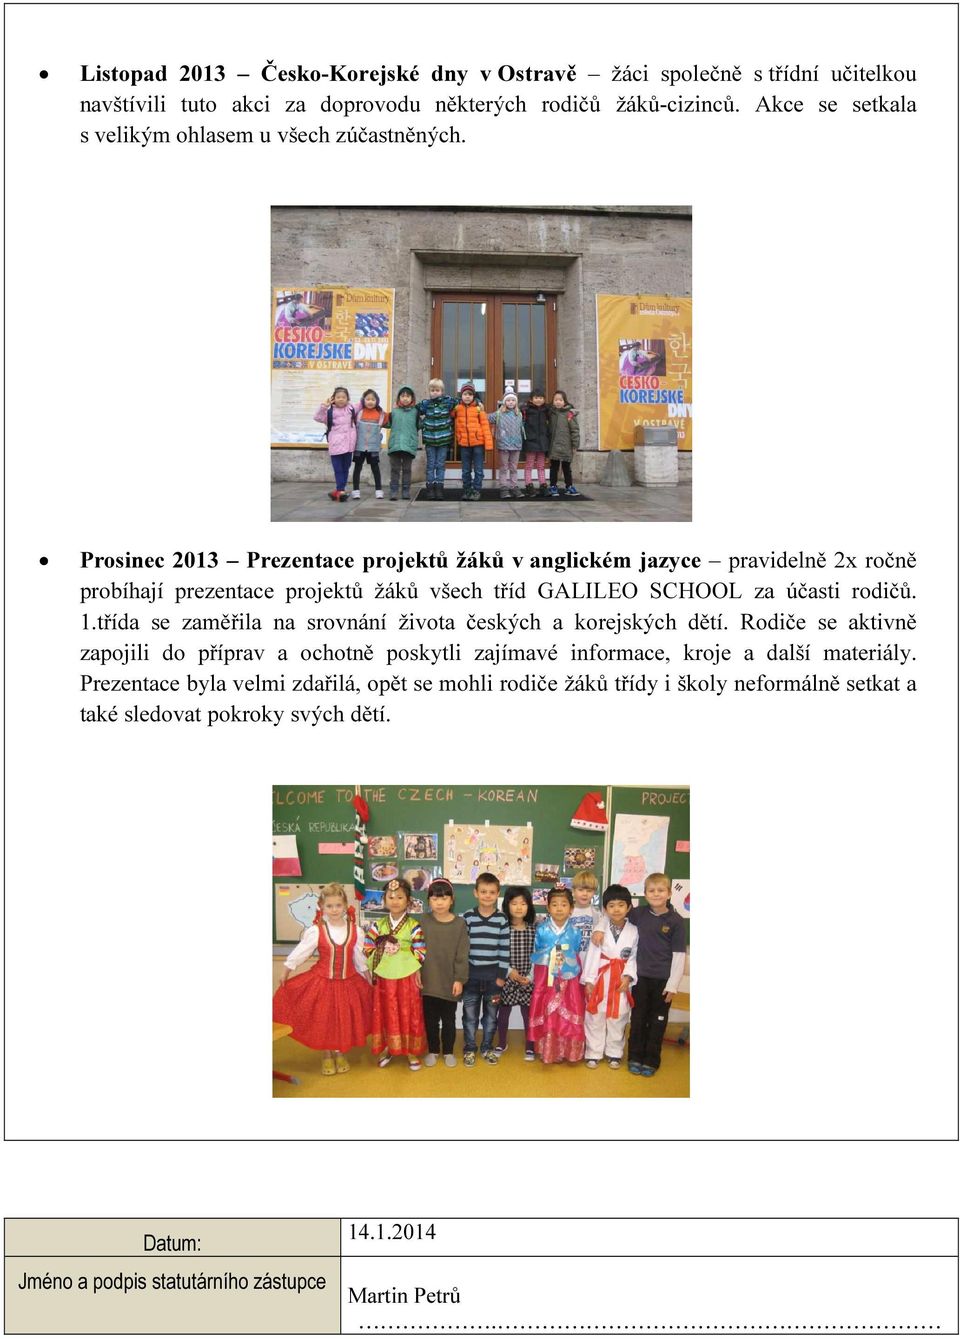 Prosinec 2013 Prezentace projektů žáků v anglickém jazyce pravidelně 2x ročně probíhají prezentace projektů žáků všech tříd GALILEO SCHOOL za účasti rodičů. 1.